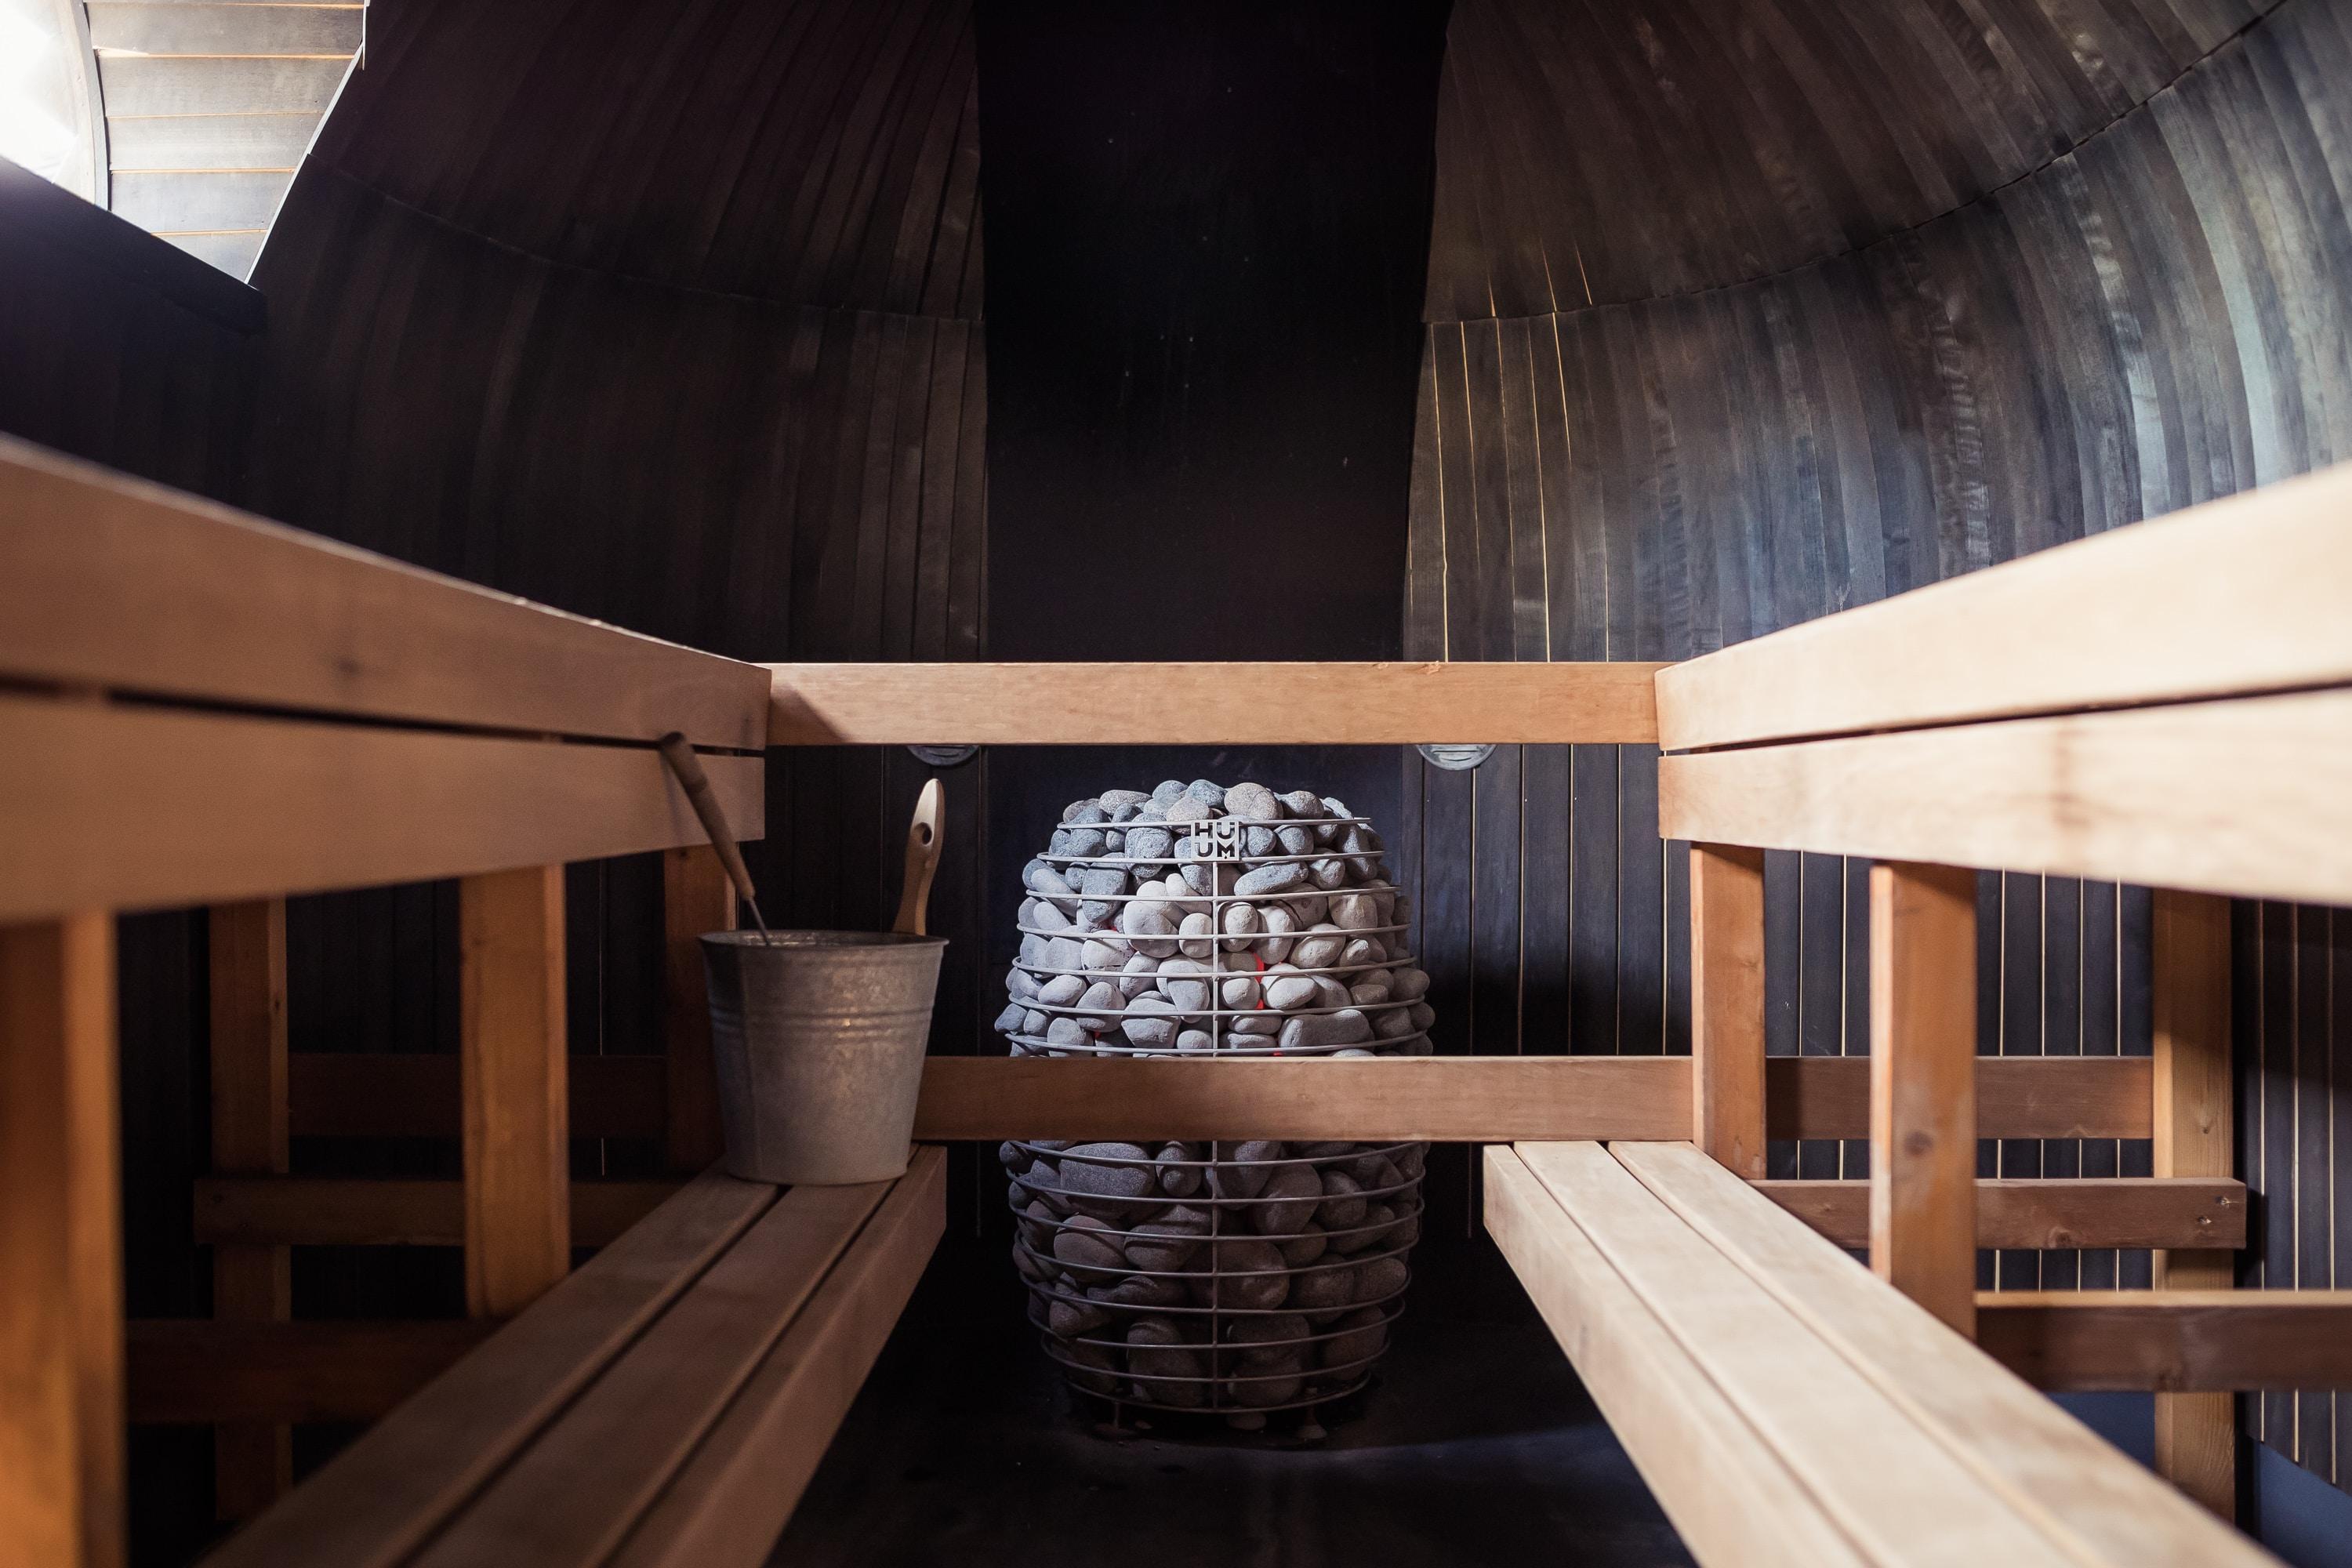 Co daje sauna? Jakie są korzyści saunowania? Dlaczego warto korzystać z sauny jakie są przeciwwskazania? Zalety korzystania z sauny. Jak prawidłowo korzystać z sauny?